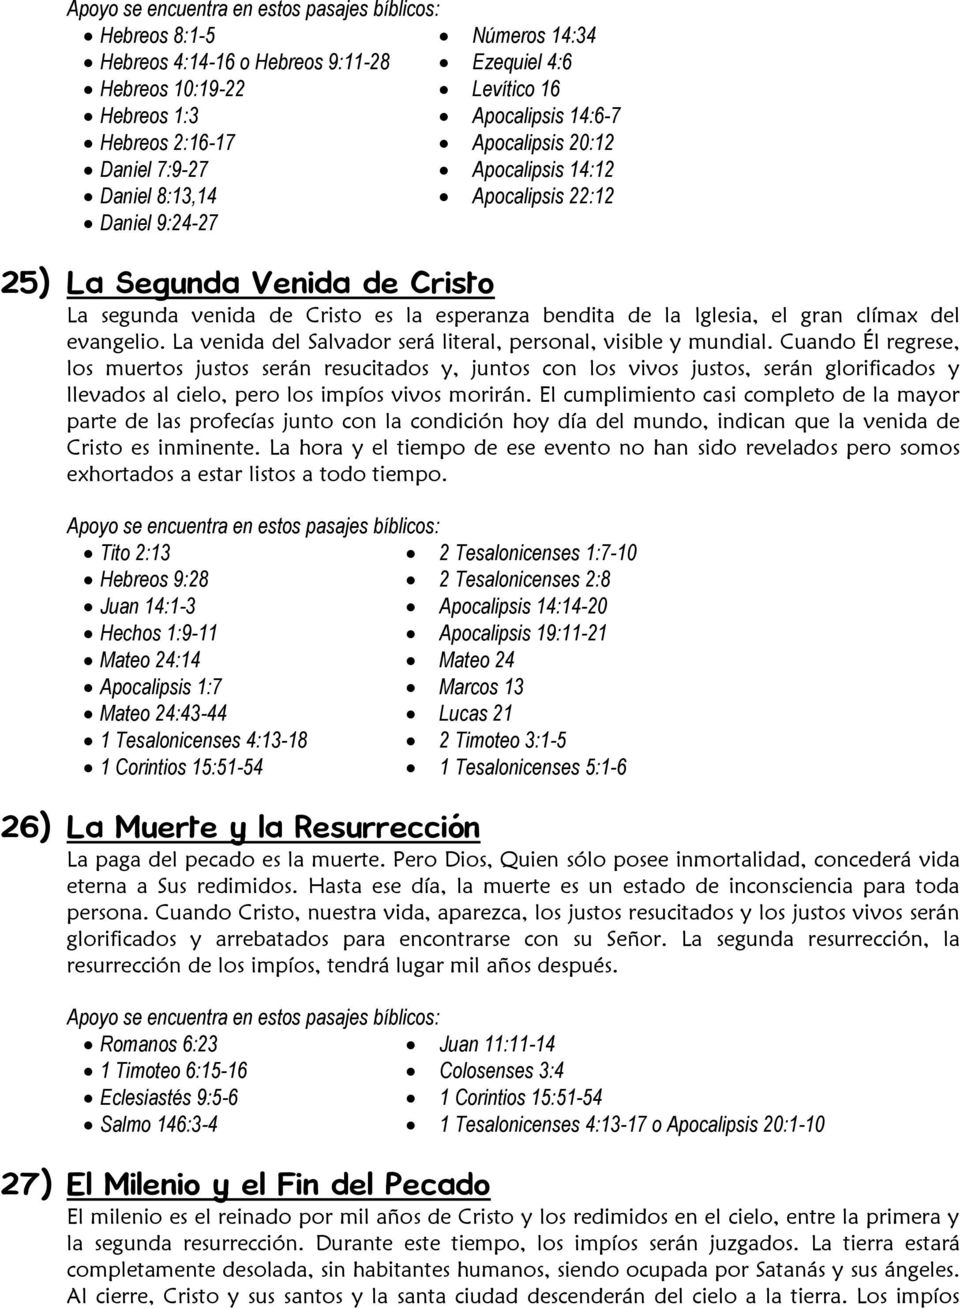 28 Creencias Fundamentales de la Iglesia Adventista del Séptimo Día - PDF  Free Download